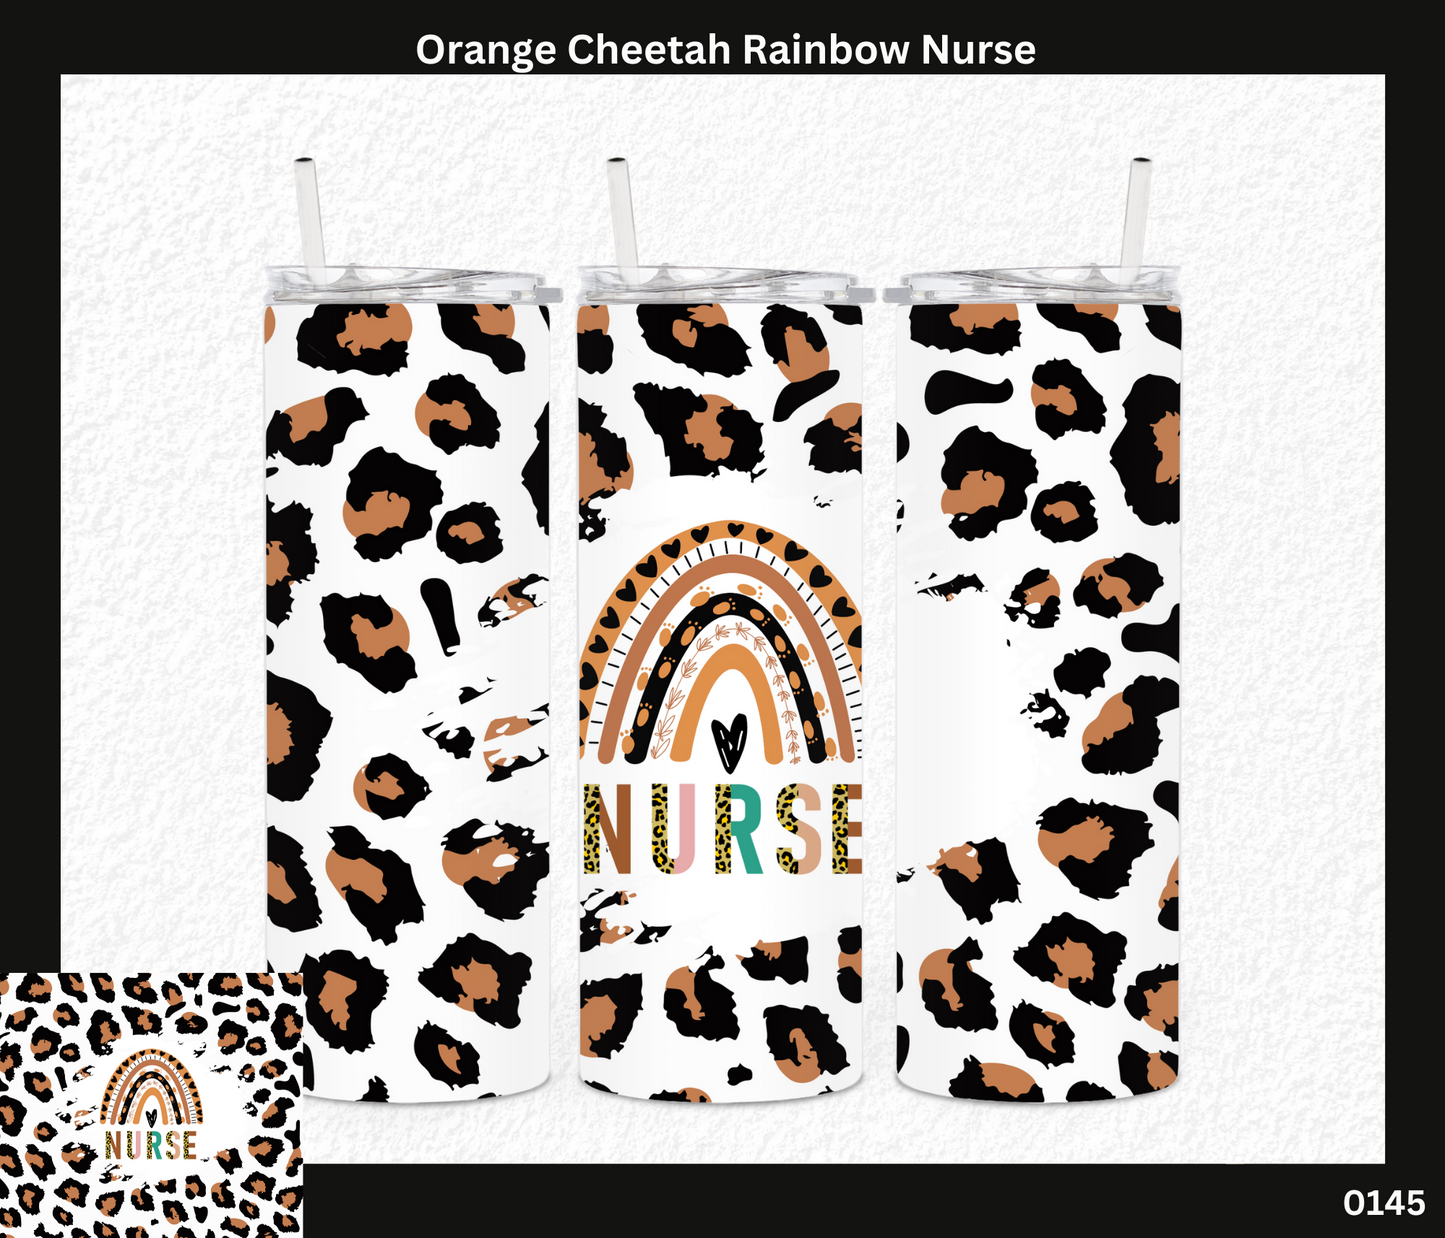 Orange Cheetah Rainbow Nurse